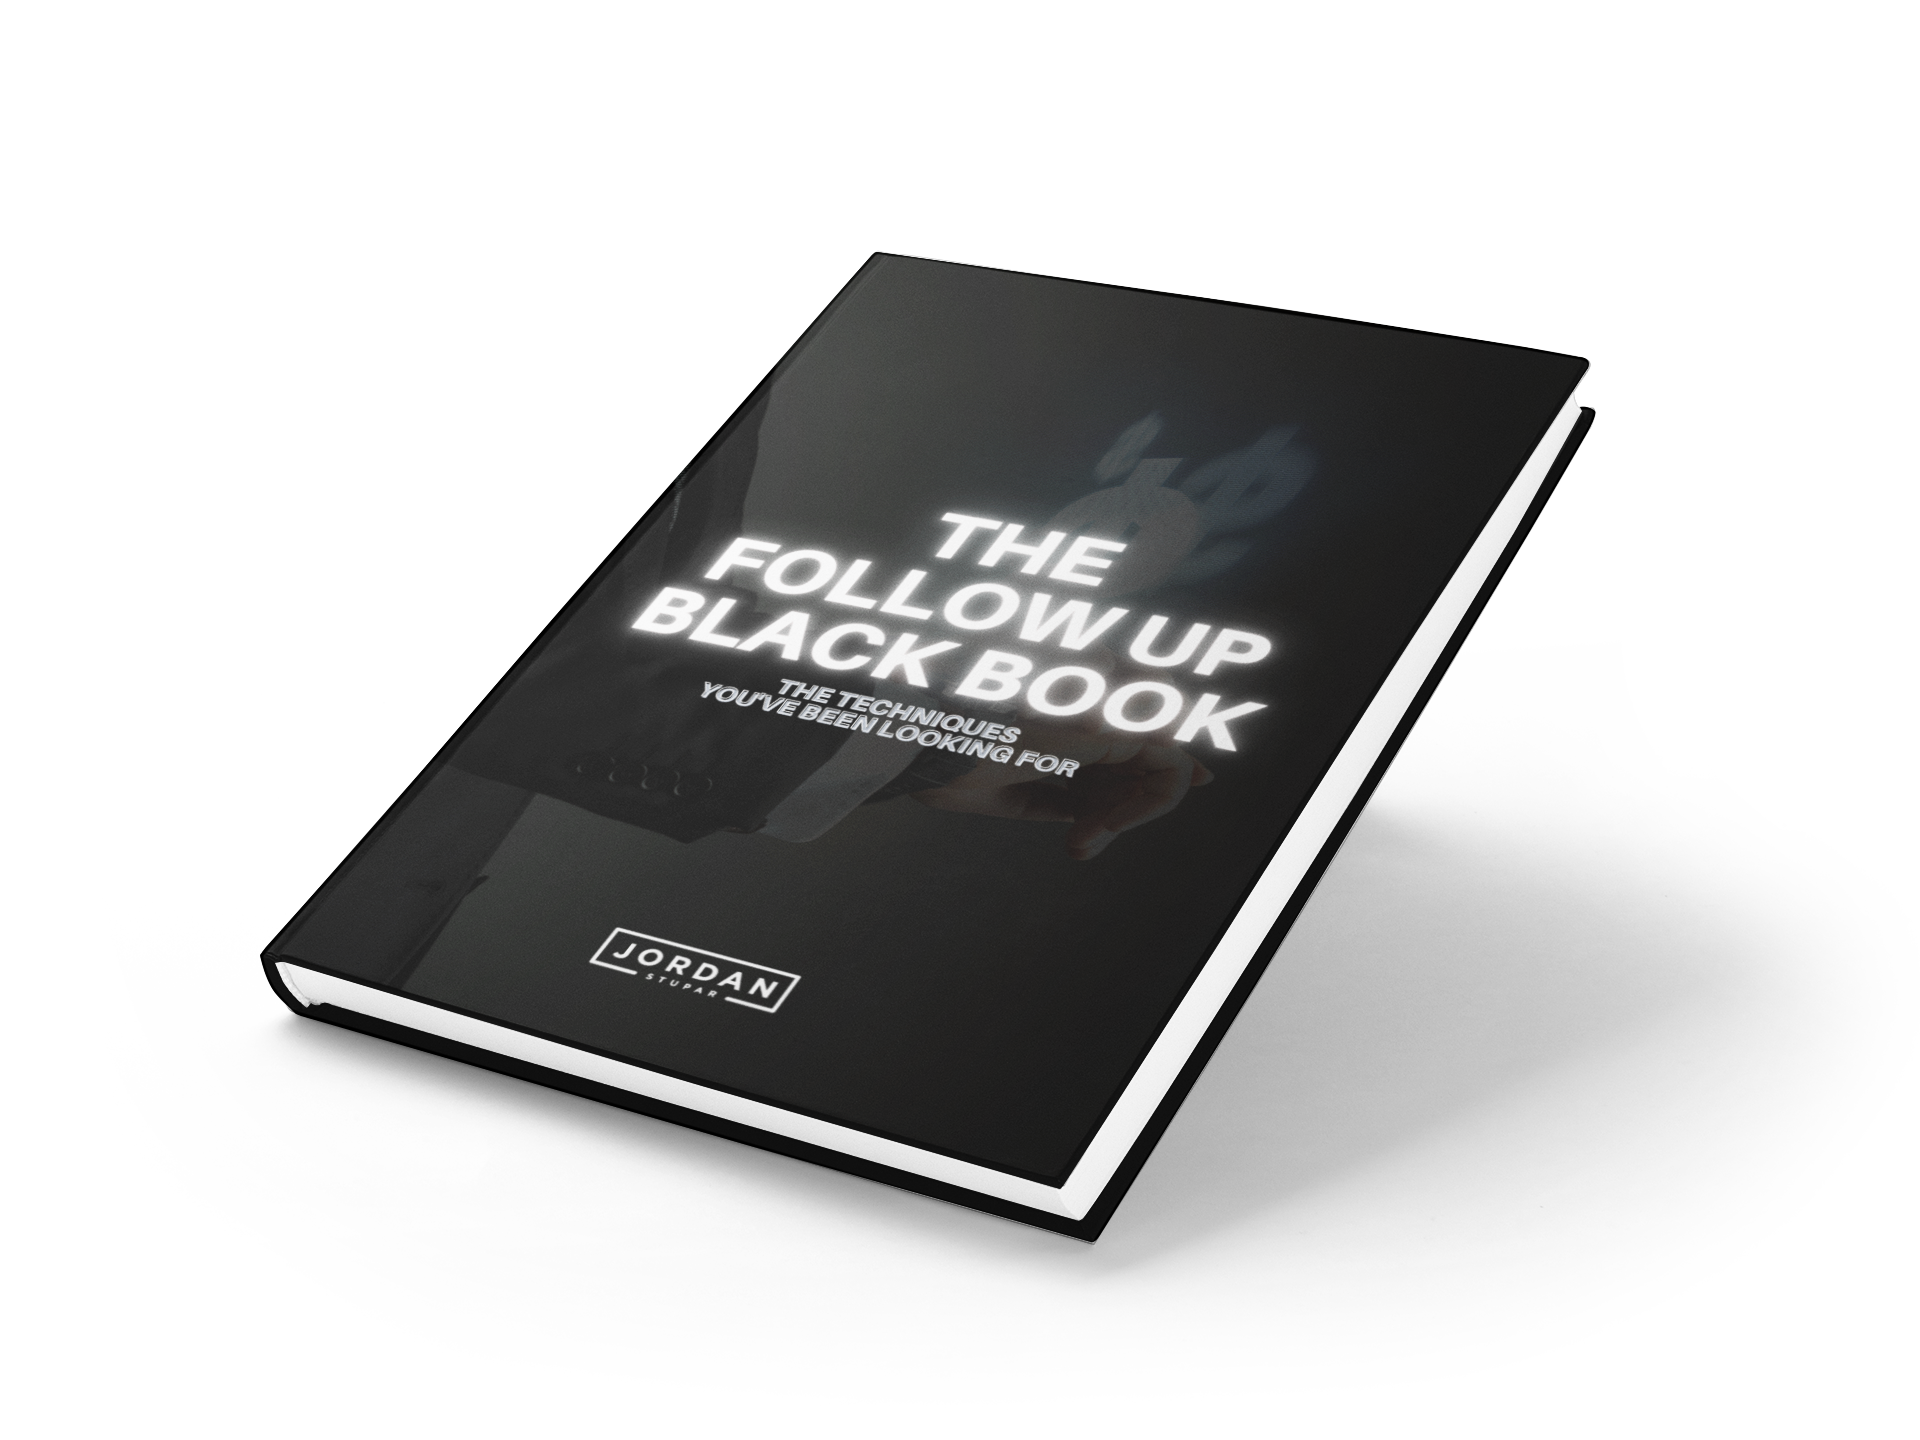 The Follow-Up Black Book – Jordan Stupar